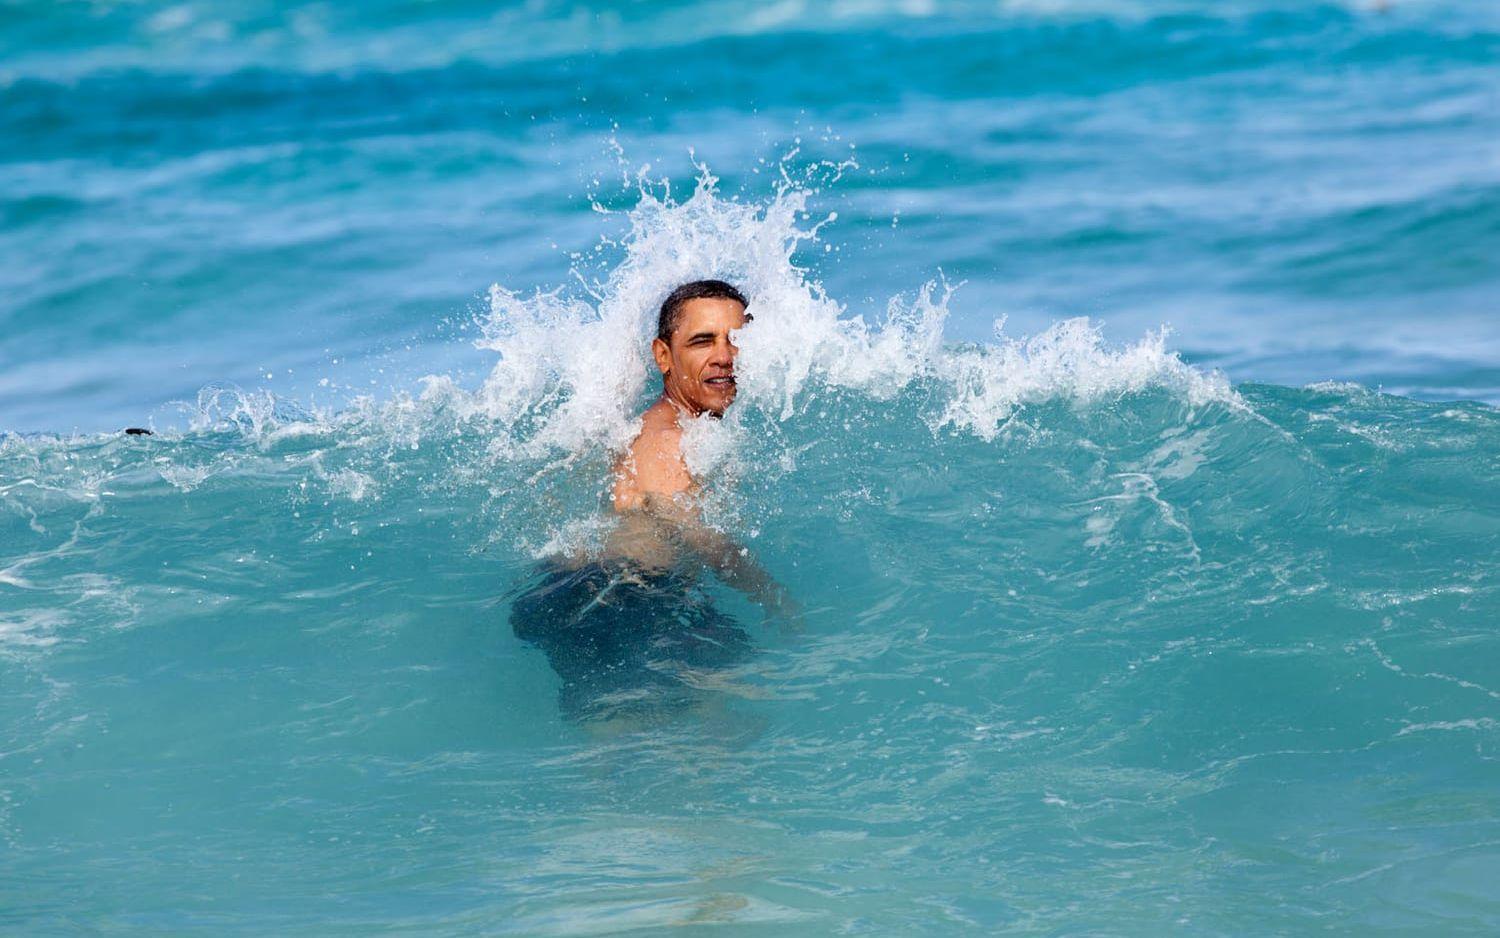 1 januari, 2012: President Barack Obama firar nyår på Hawaii tillsammans med släkt och vänner. Året inleds med ett uppfriskande dopp i havet. Foto: Pete Souza / Vita Huset